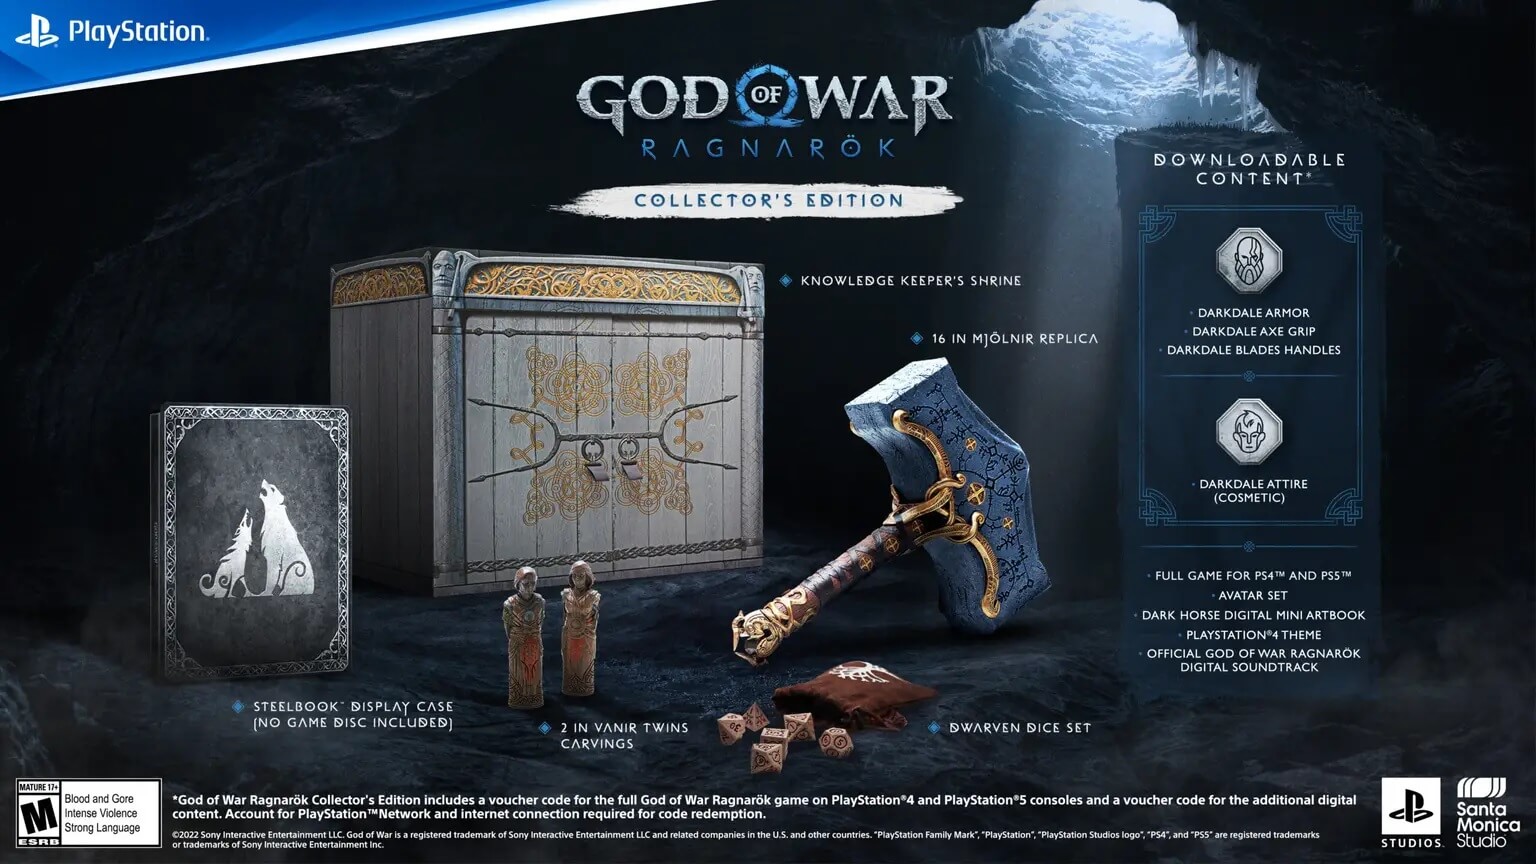 Las ediciones coleccionista y Jotnar de God of War Ragnarok no incluyen el disco del juego